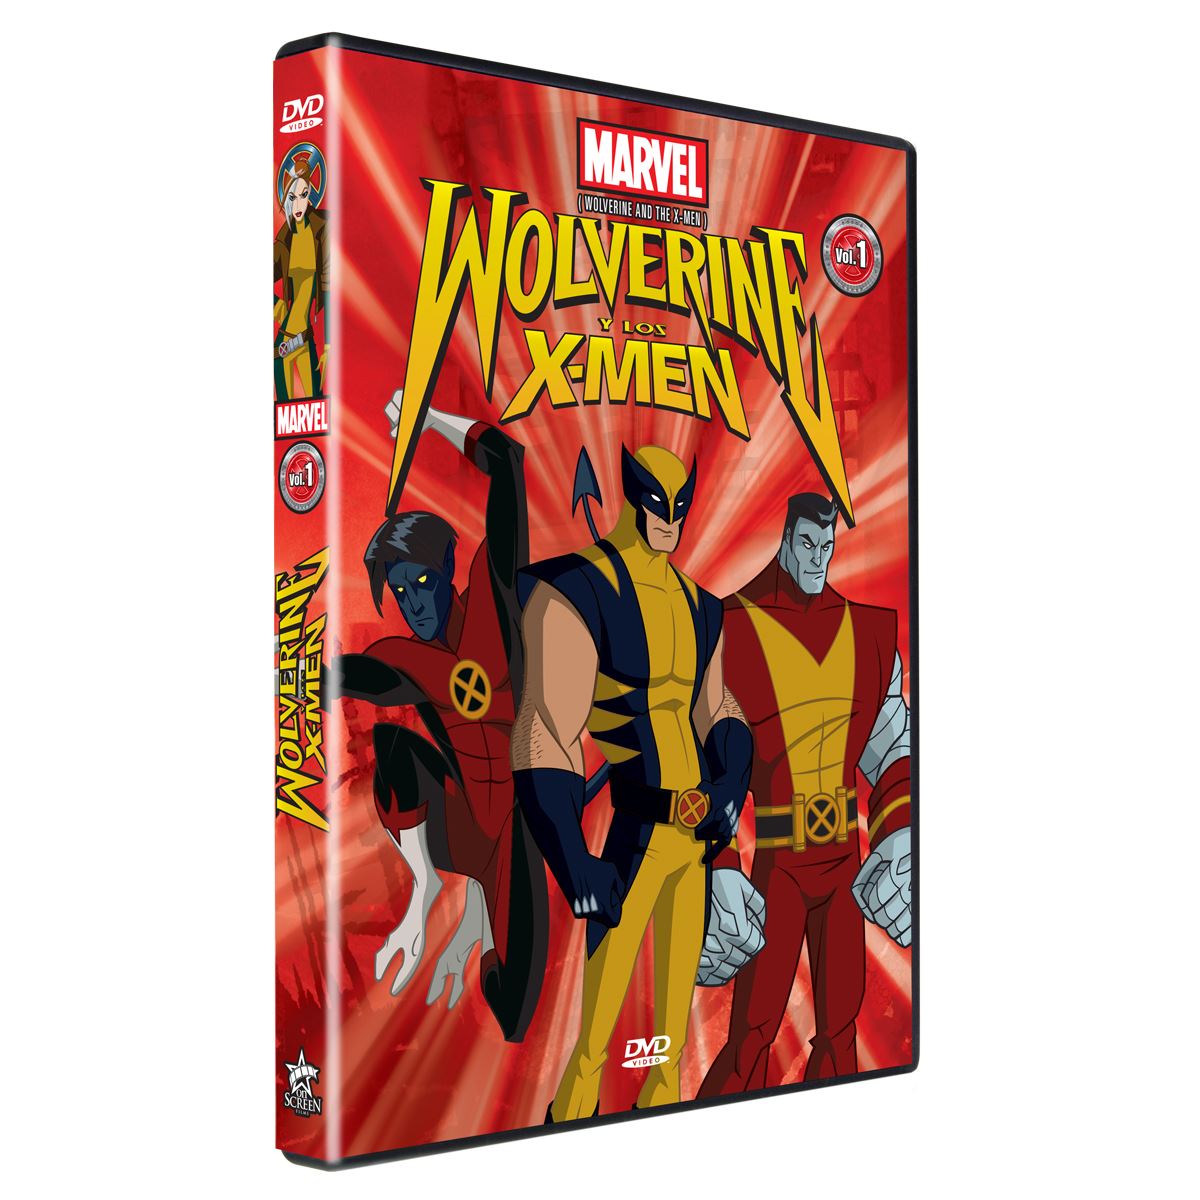 DVD Wolverine Vol 1